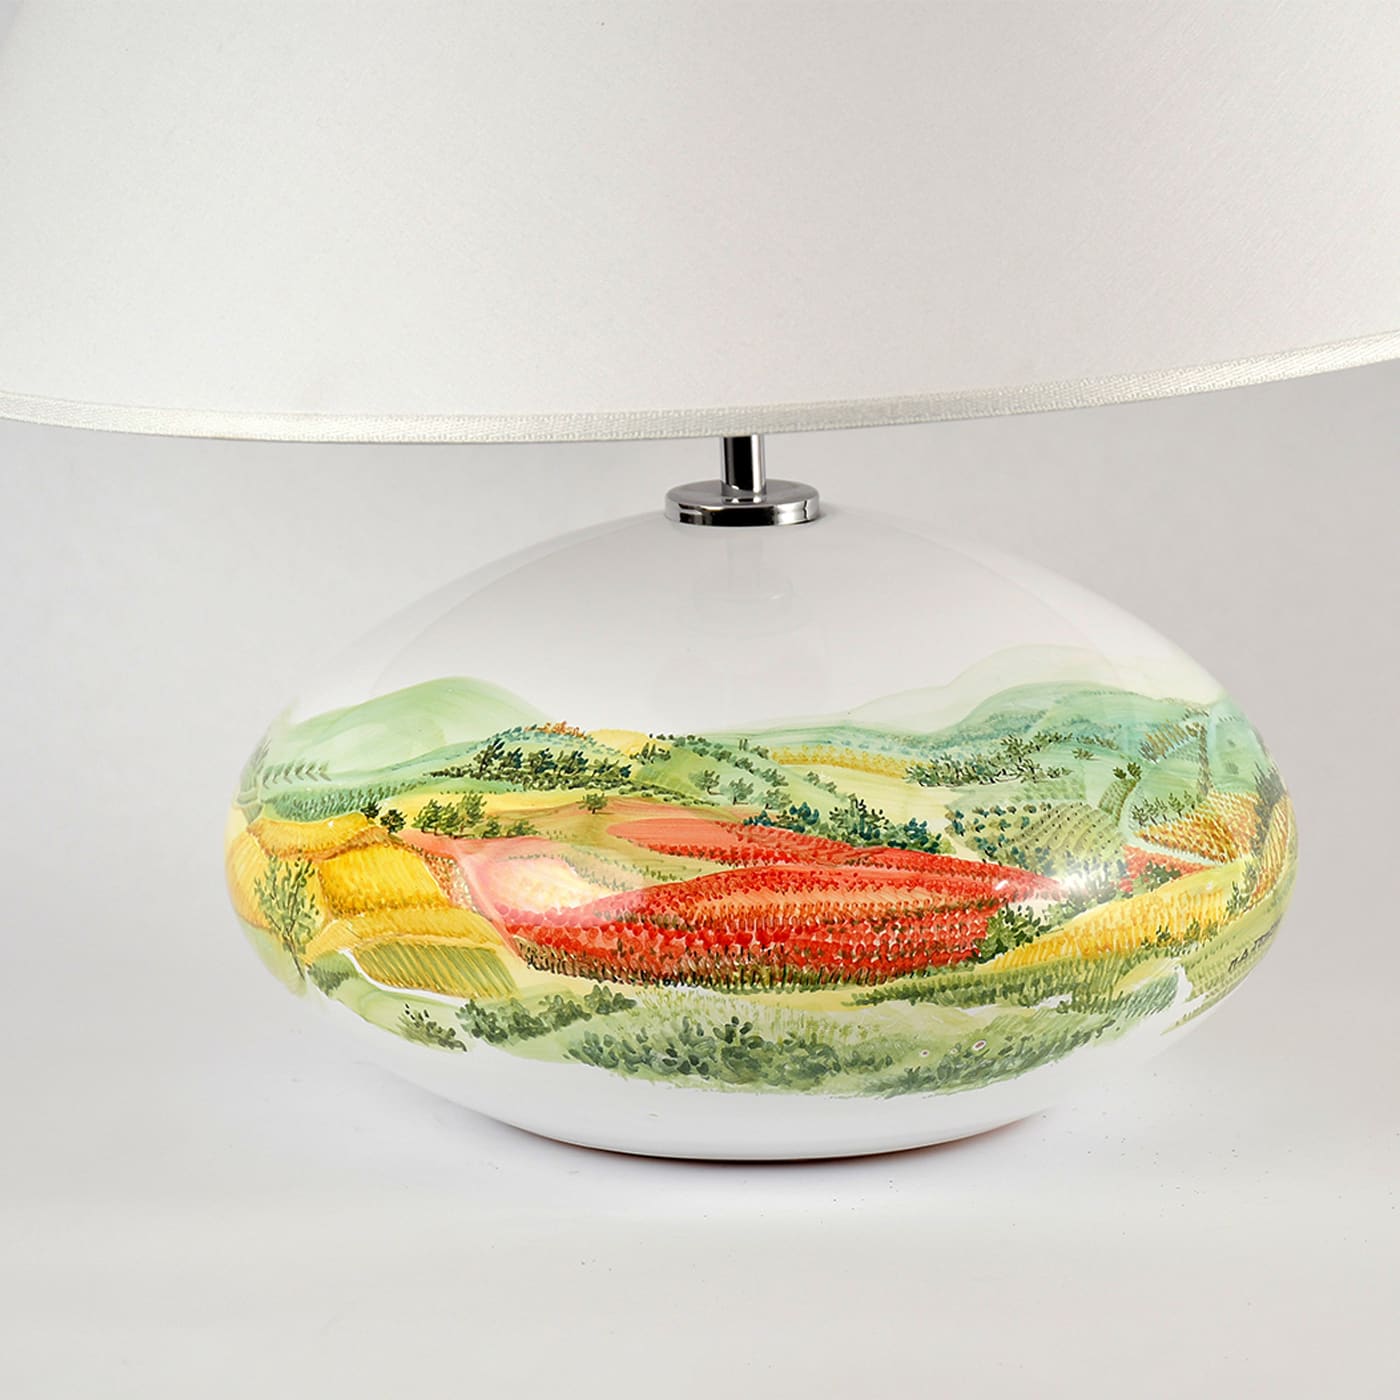 Paesaggio Table Lamp by Maria Antonietta Taticchi - Materia Ceramica